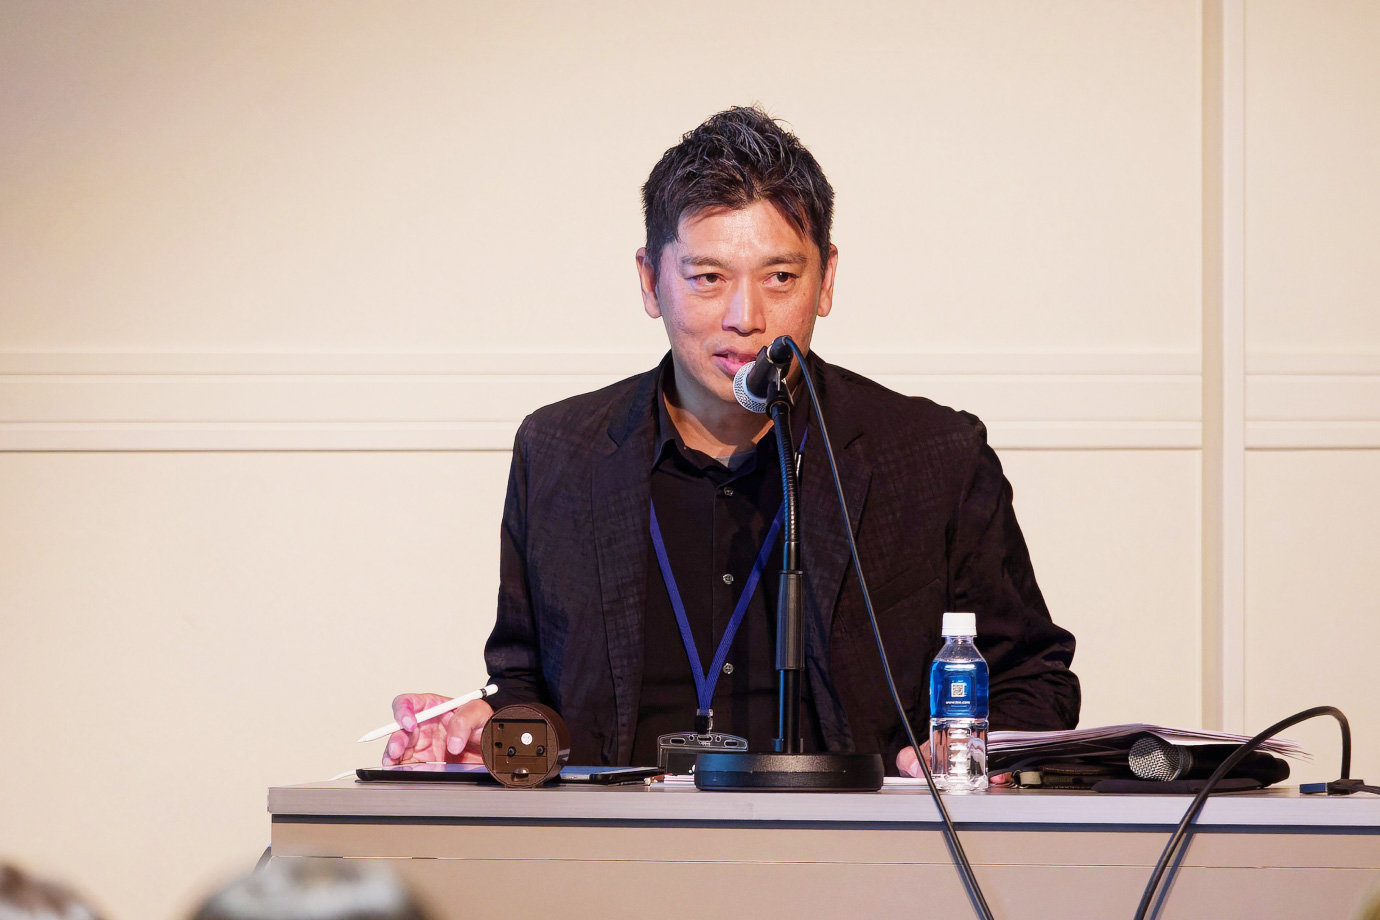 日本デザイン団体協議会（DOO）でデザインを盛り上げていくことを目指す藤井将之氏